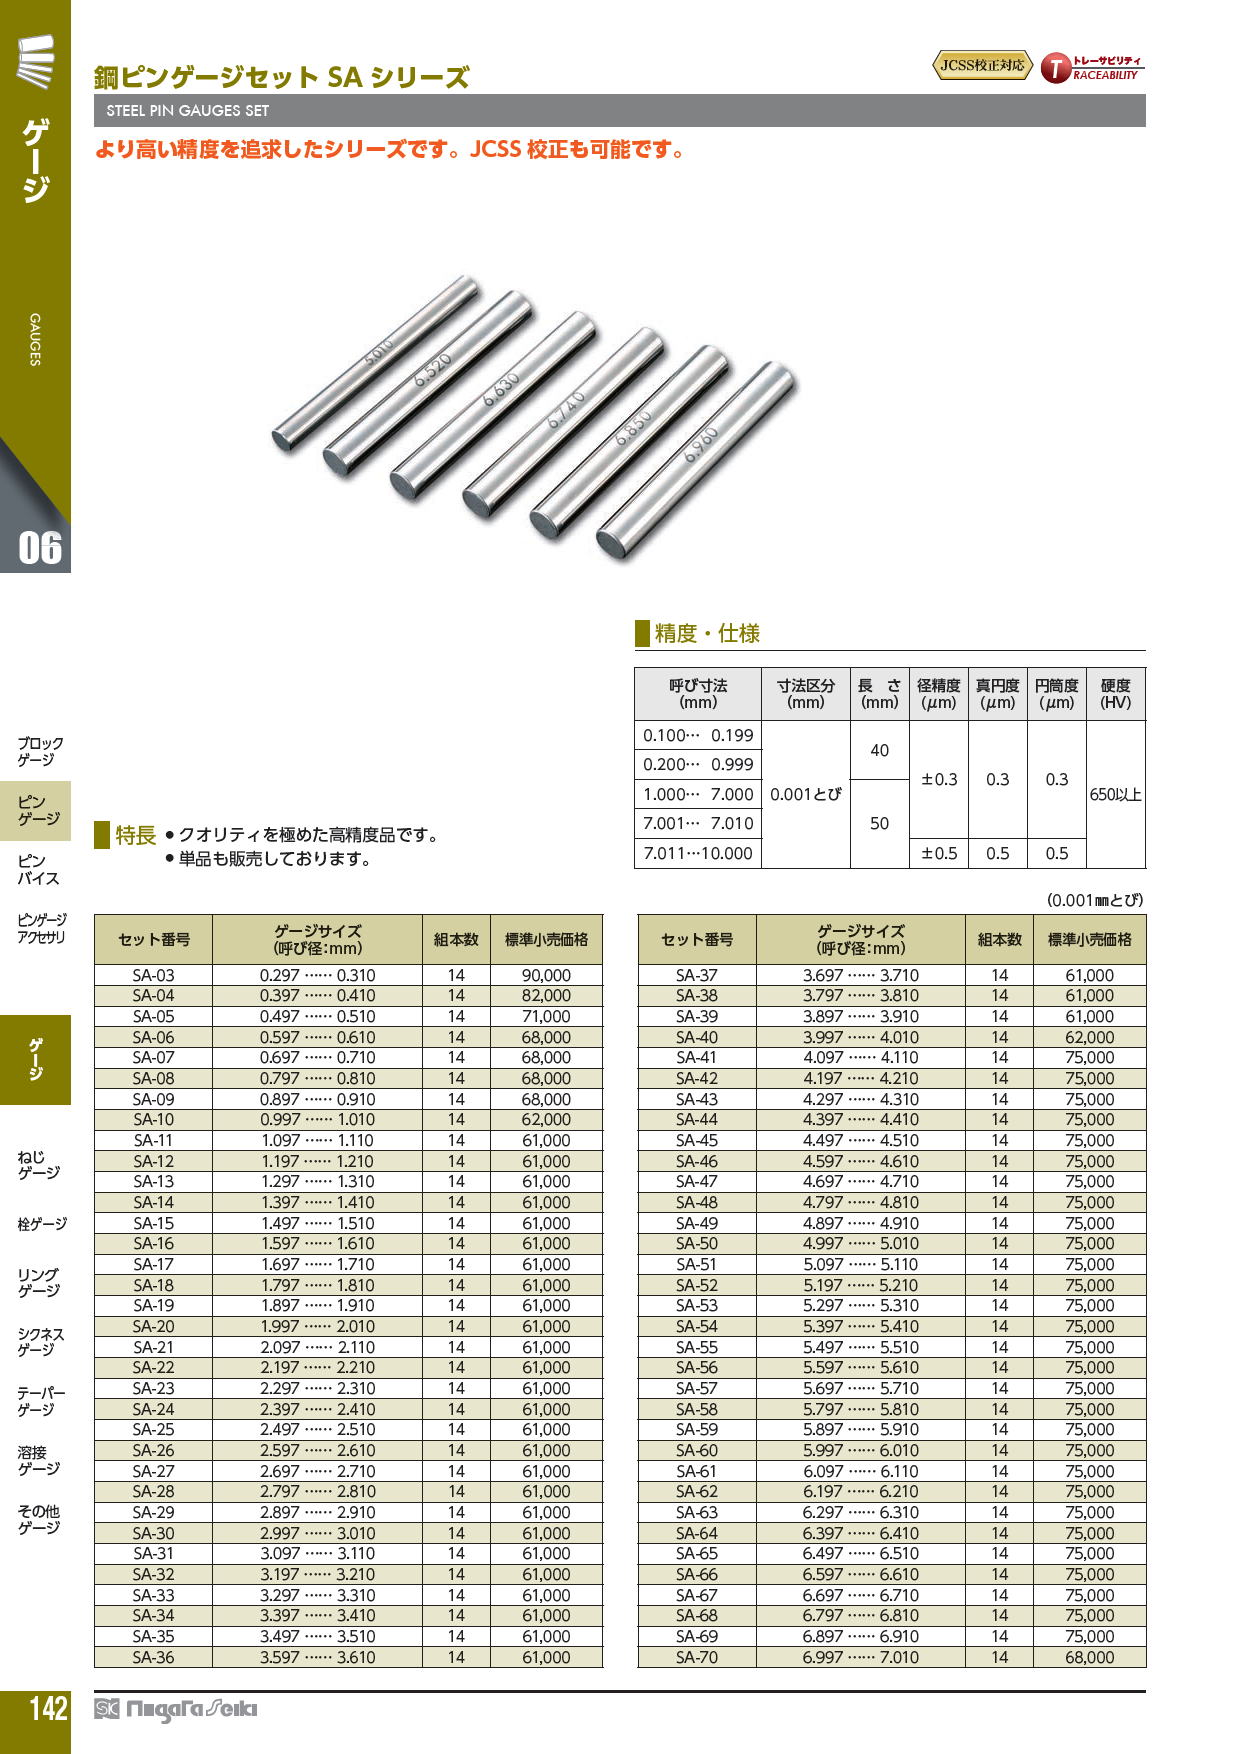 新潟精機 鋼ピンゲージセット PM-0B (208002) (PMシリーズ) - 道具、工具